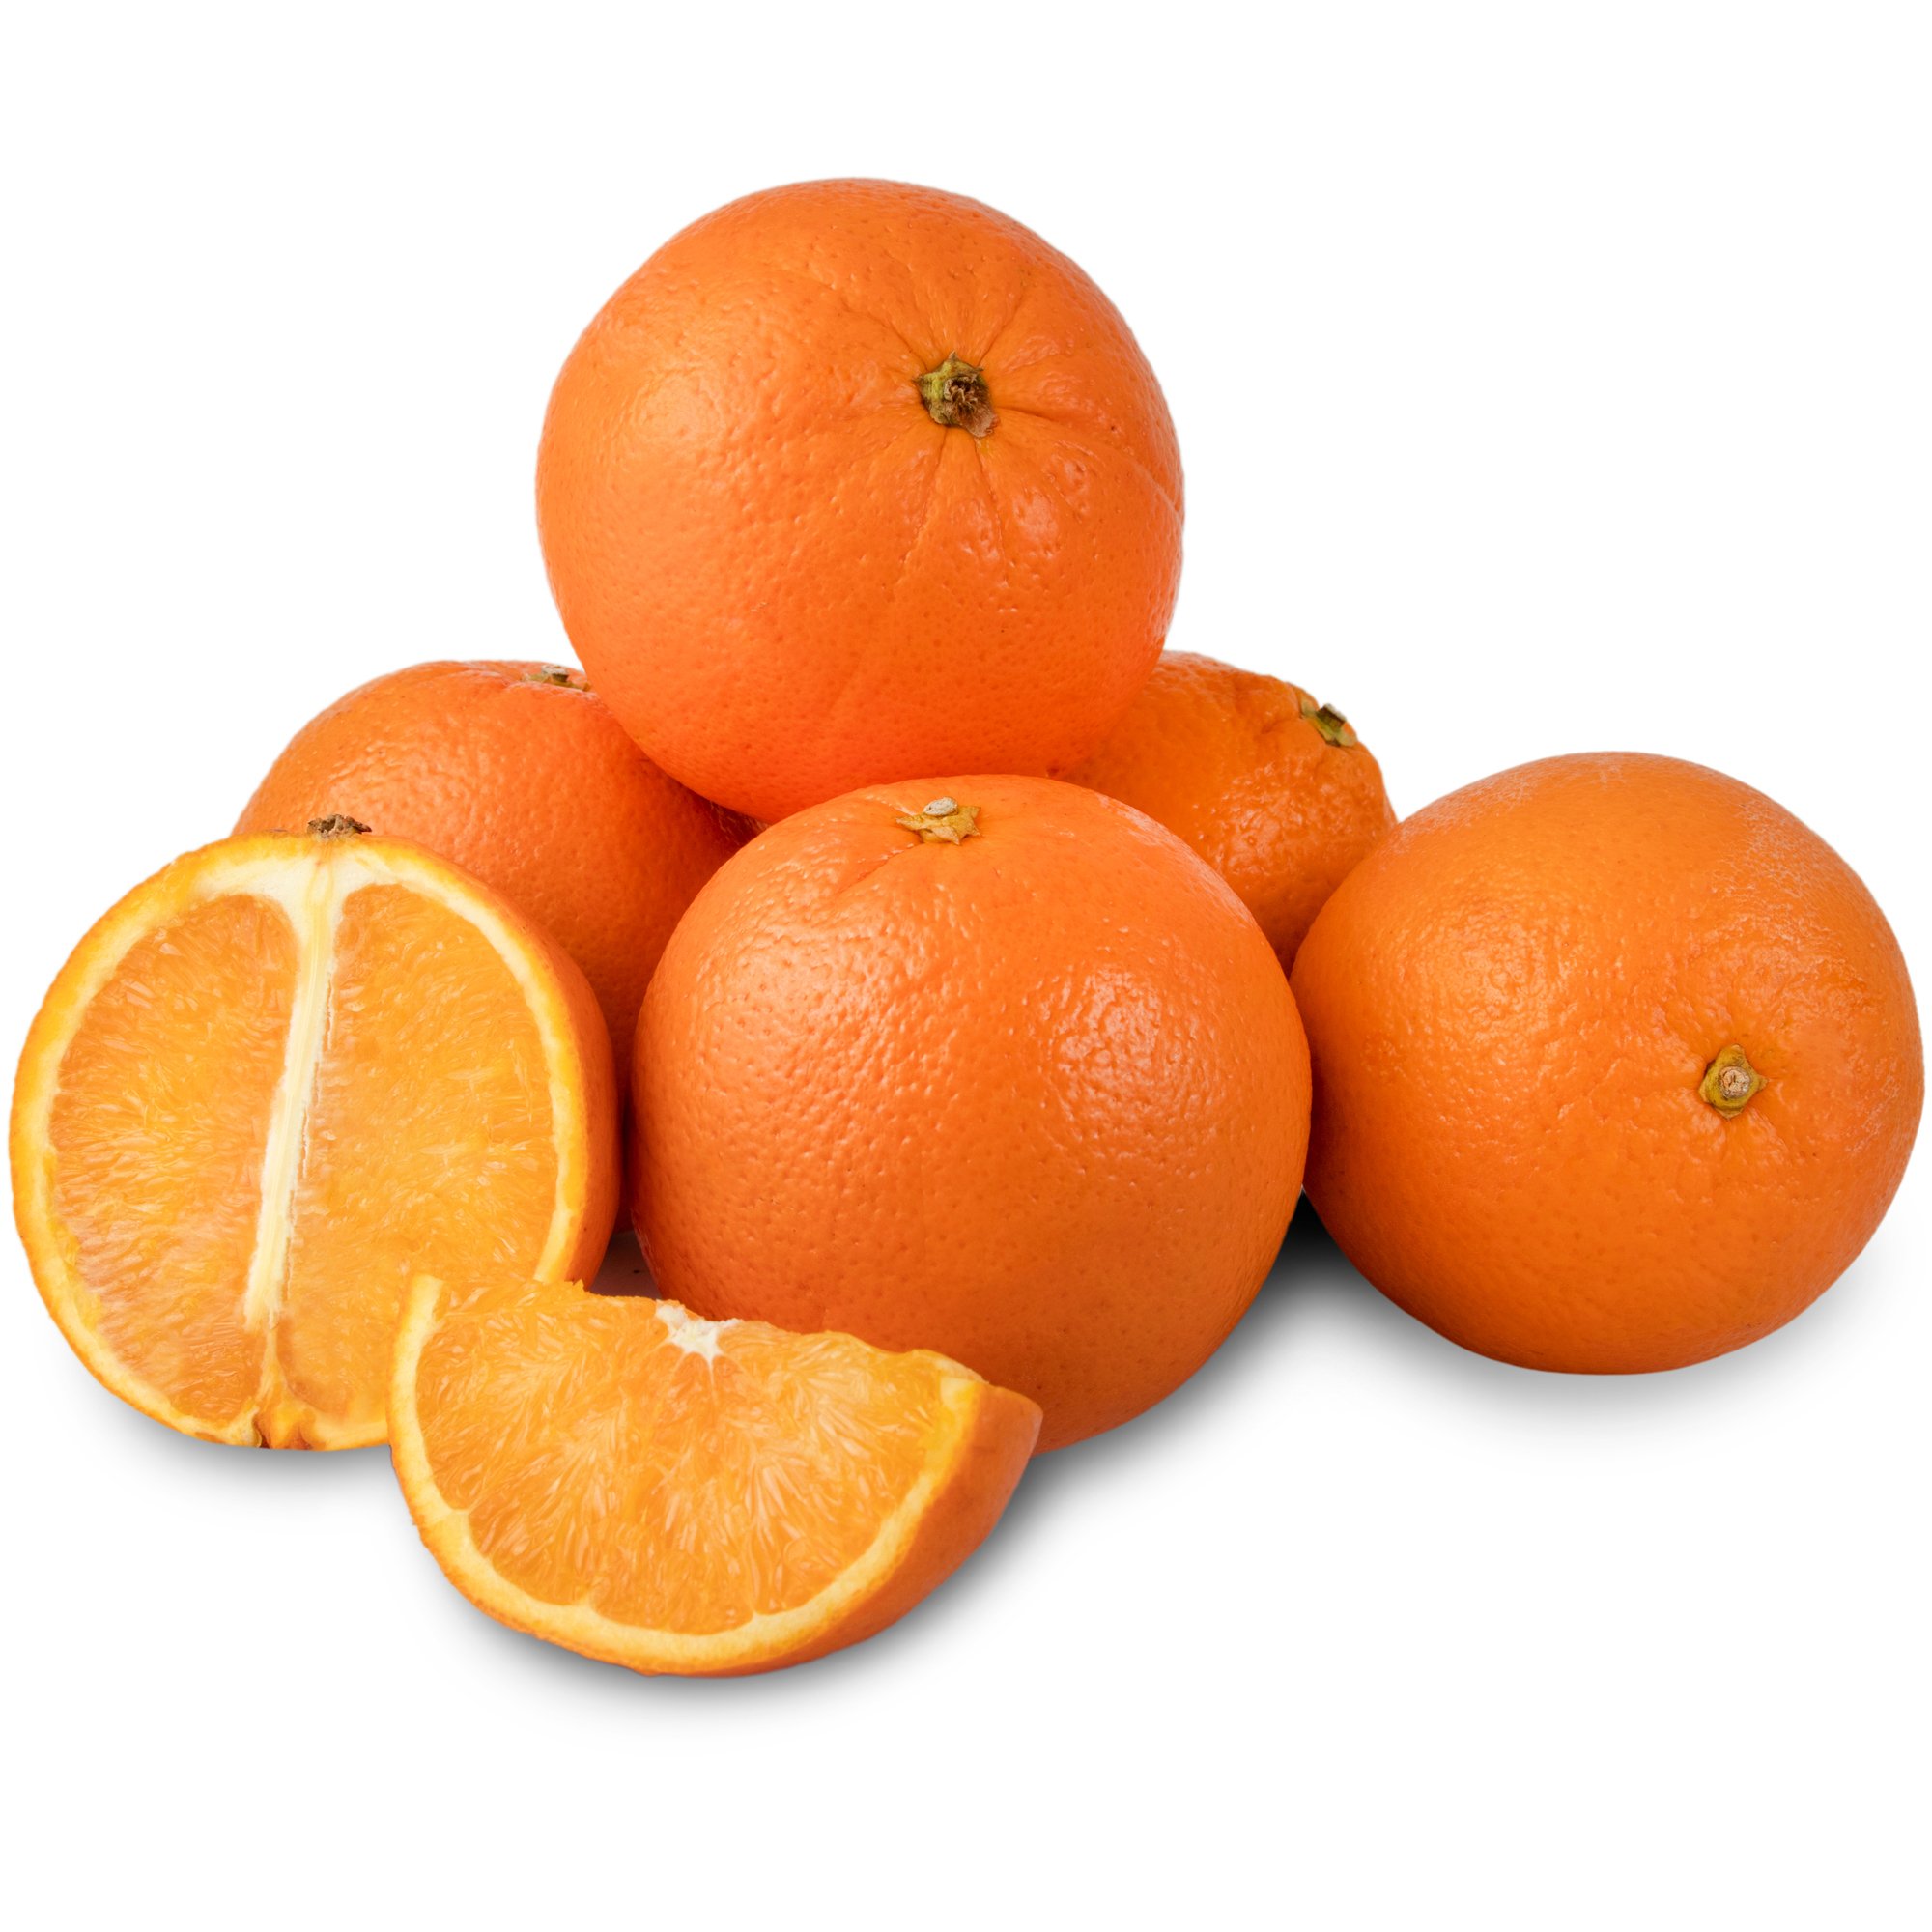 پرتقال تامسون شمال (تعداد تقریبی ۳ عدد) ۱ کیلوگرمی ± ۸۰ گرم